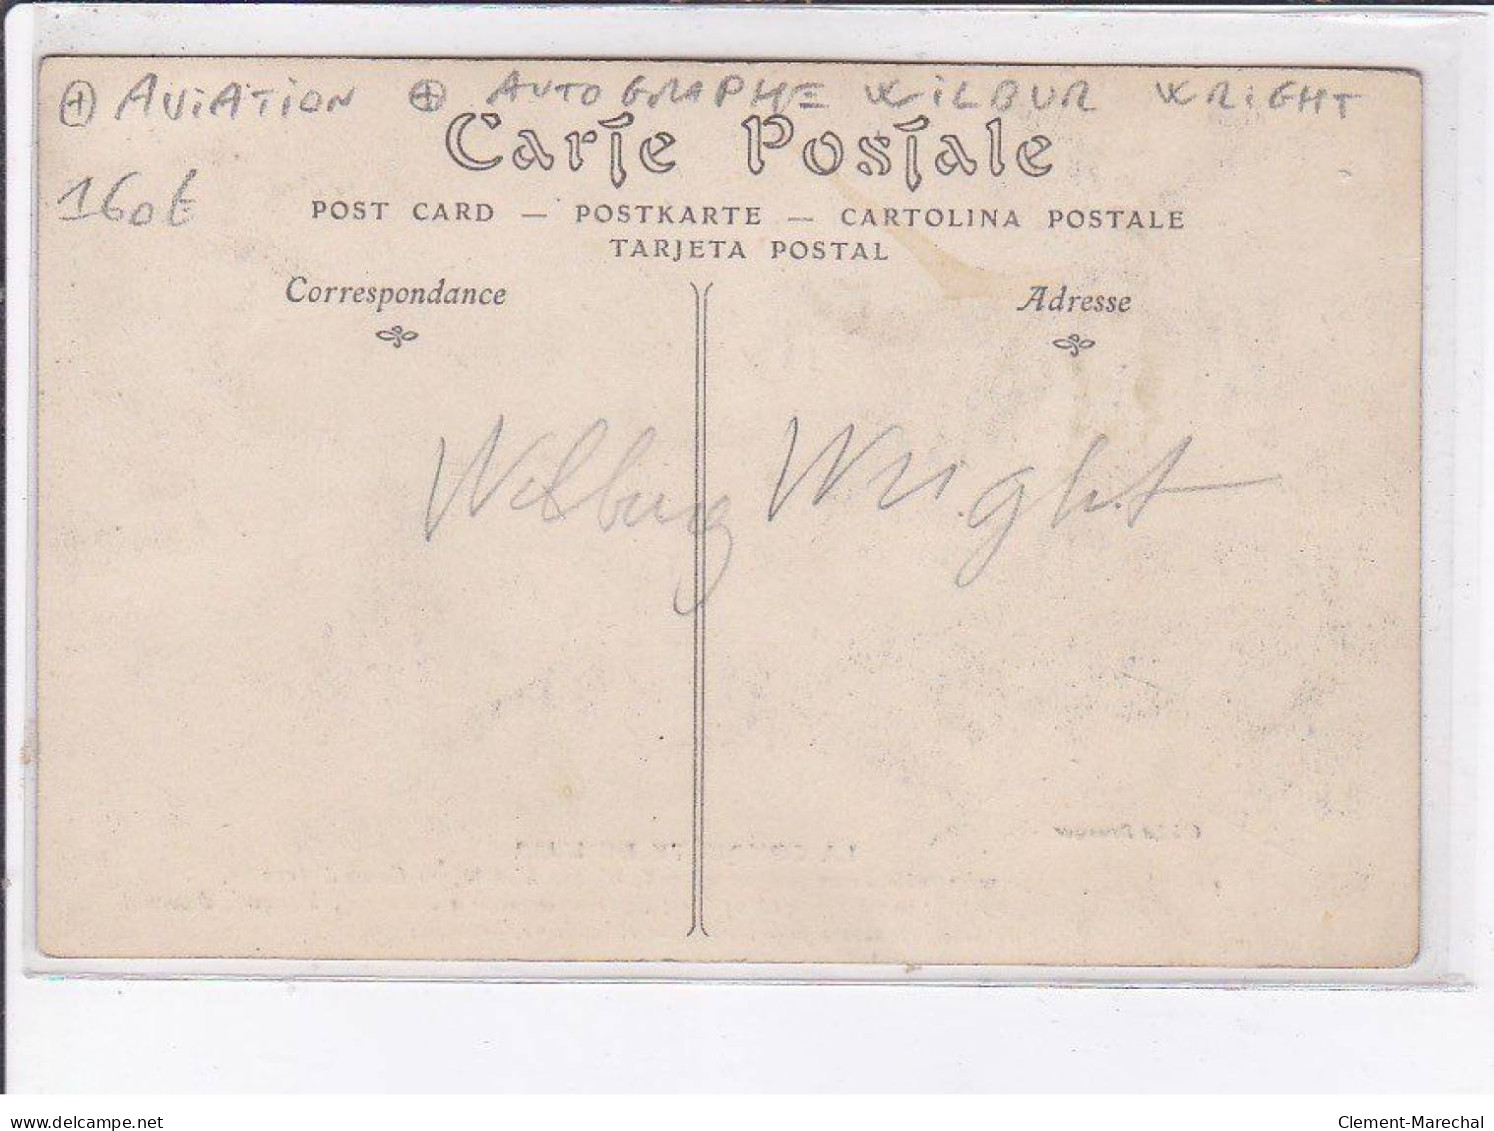 FRANCE: La Conquète De L'air, Wilbur Wright, 1908 Au Camp D'auvour, Aviation, Autographe - Très Bon état - Piloten